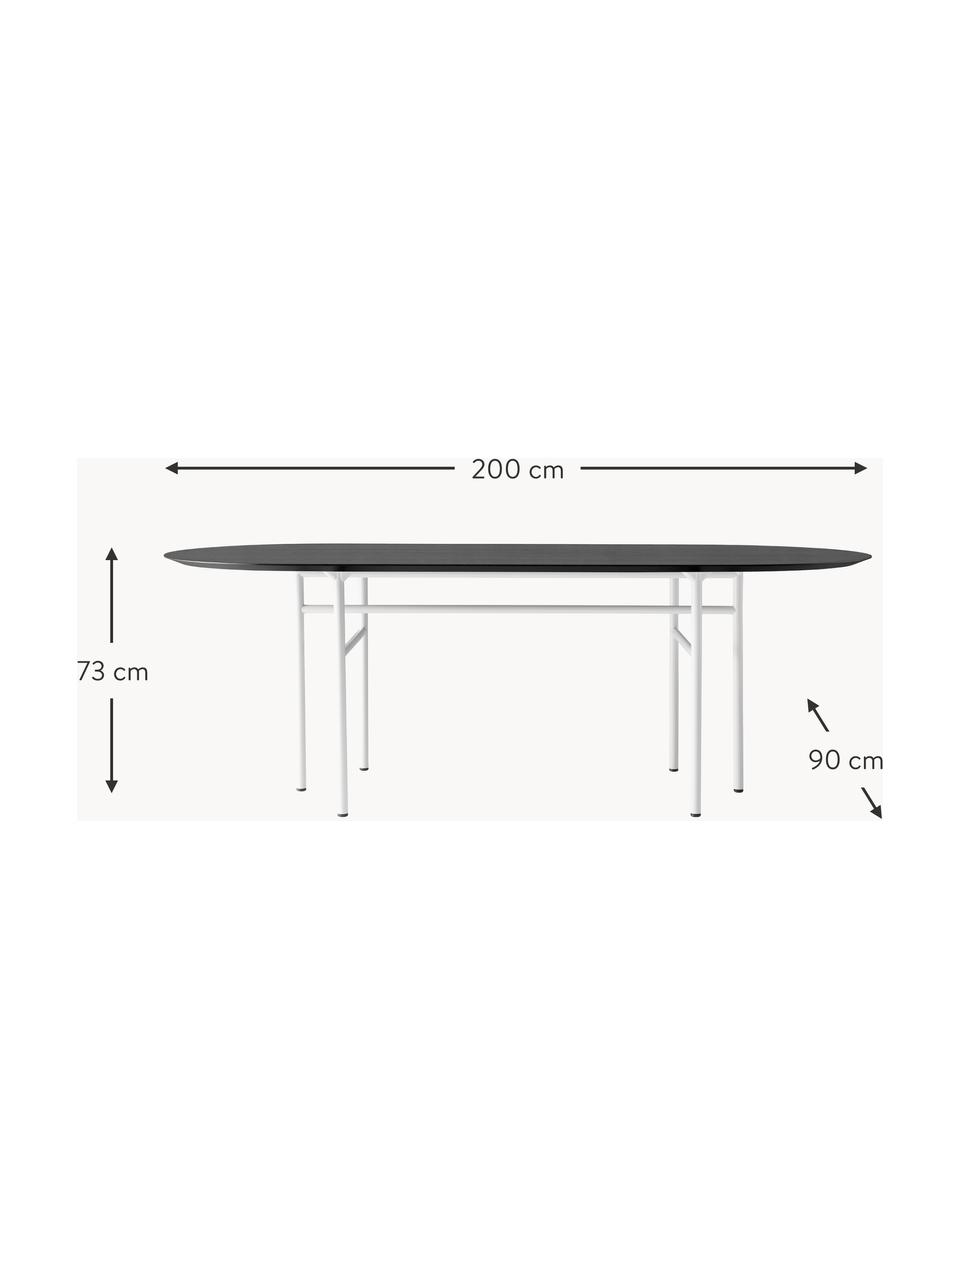 Oválný jídelní stůl Snaregade, 210 x 95 cm, Dřevo, antracitová, světle šedá, Š 210 cm, H 95 cm